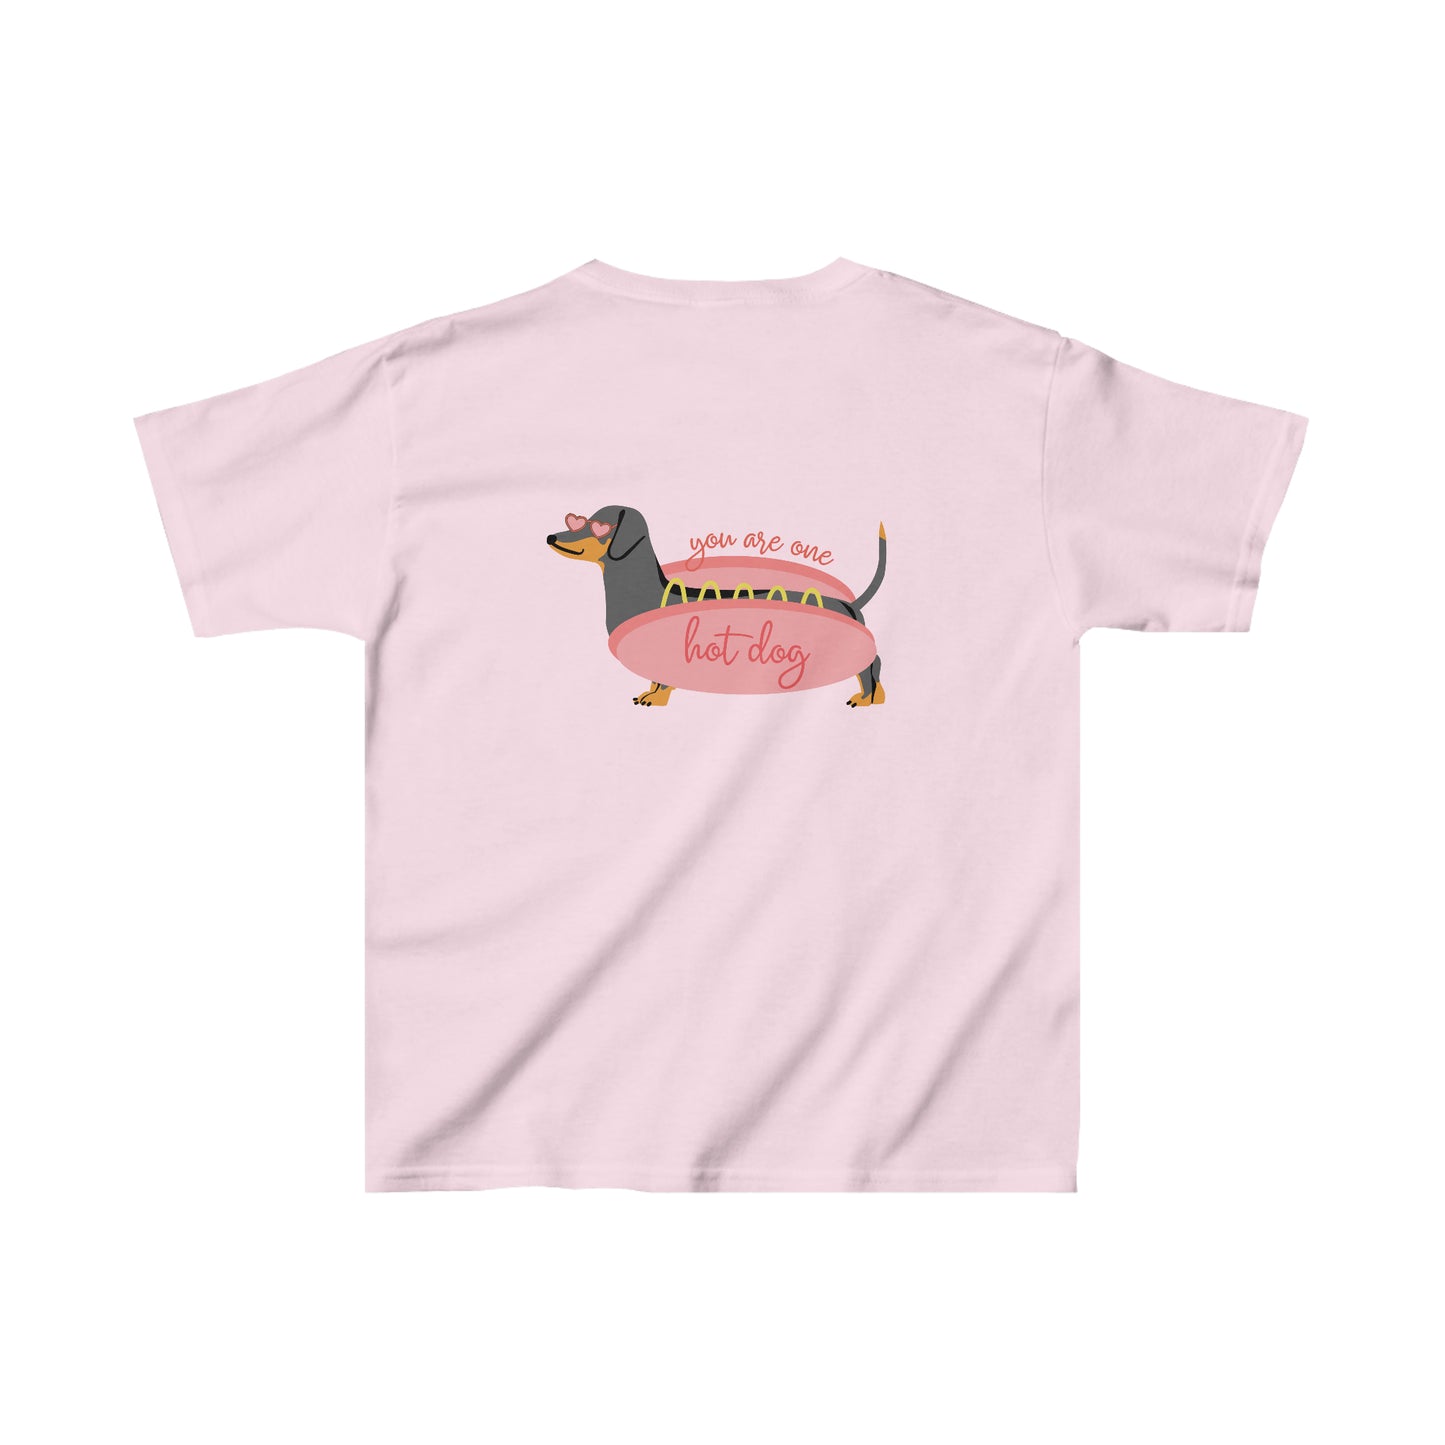 Vintage HOT DOG t-shirt - child